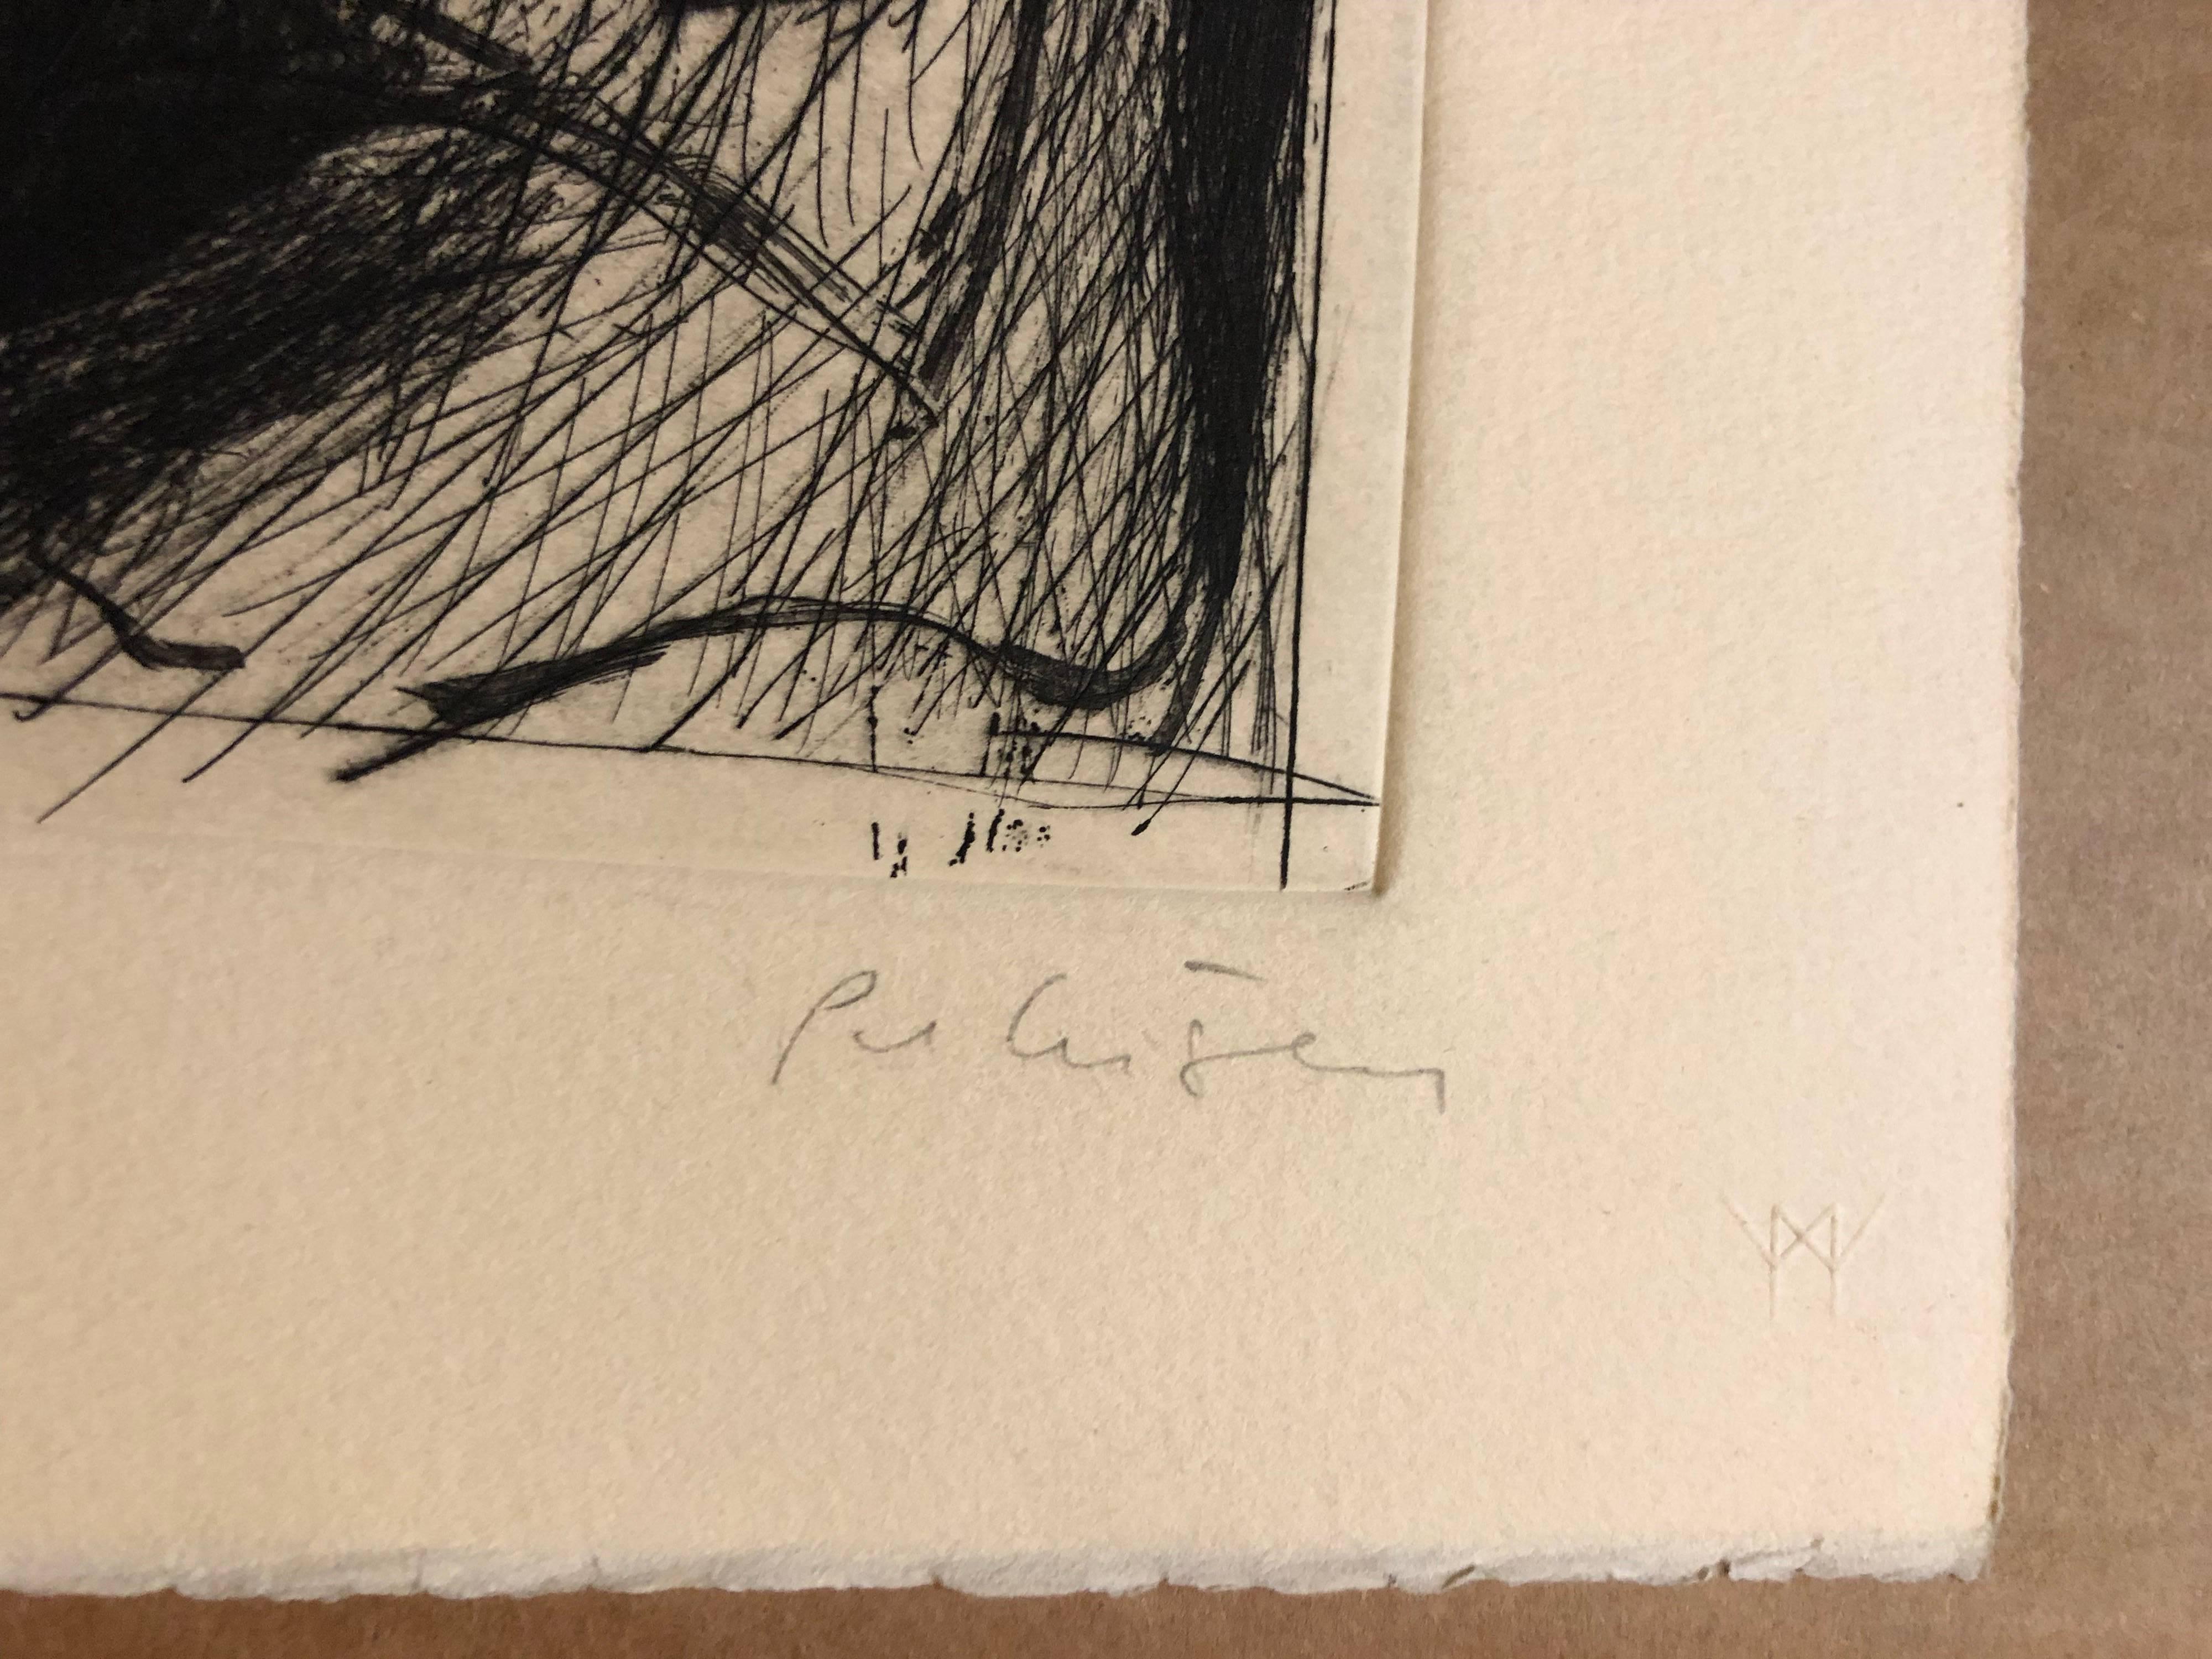 Will Petersen, peintre, maître-imprimeur et poète, est né à
Chicago. (Amer. 1928-1994) a créé cette édition limitée d'une gravure sur papier Arches à l'occasion d'une exposition.
le Lakeside Studio.

L'IMPRESSION LITHOGRAPHIQUE est issue d'une